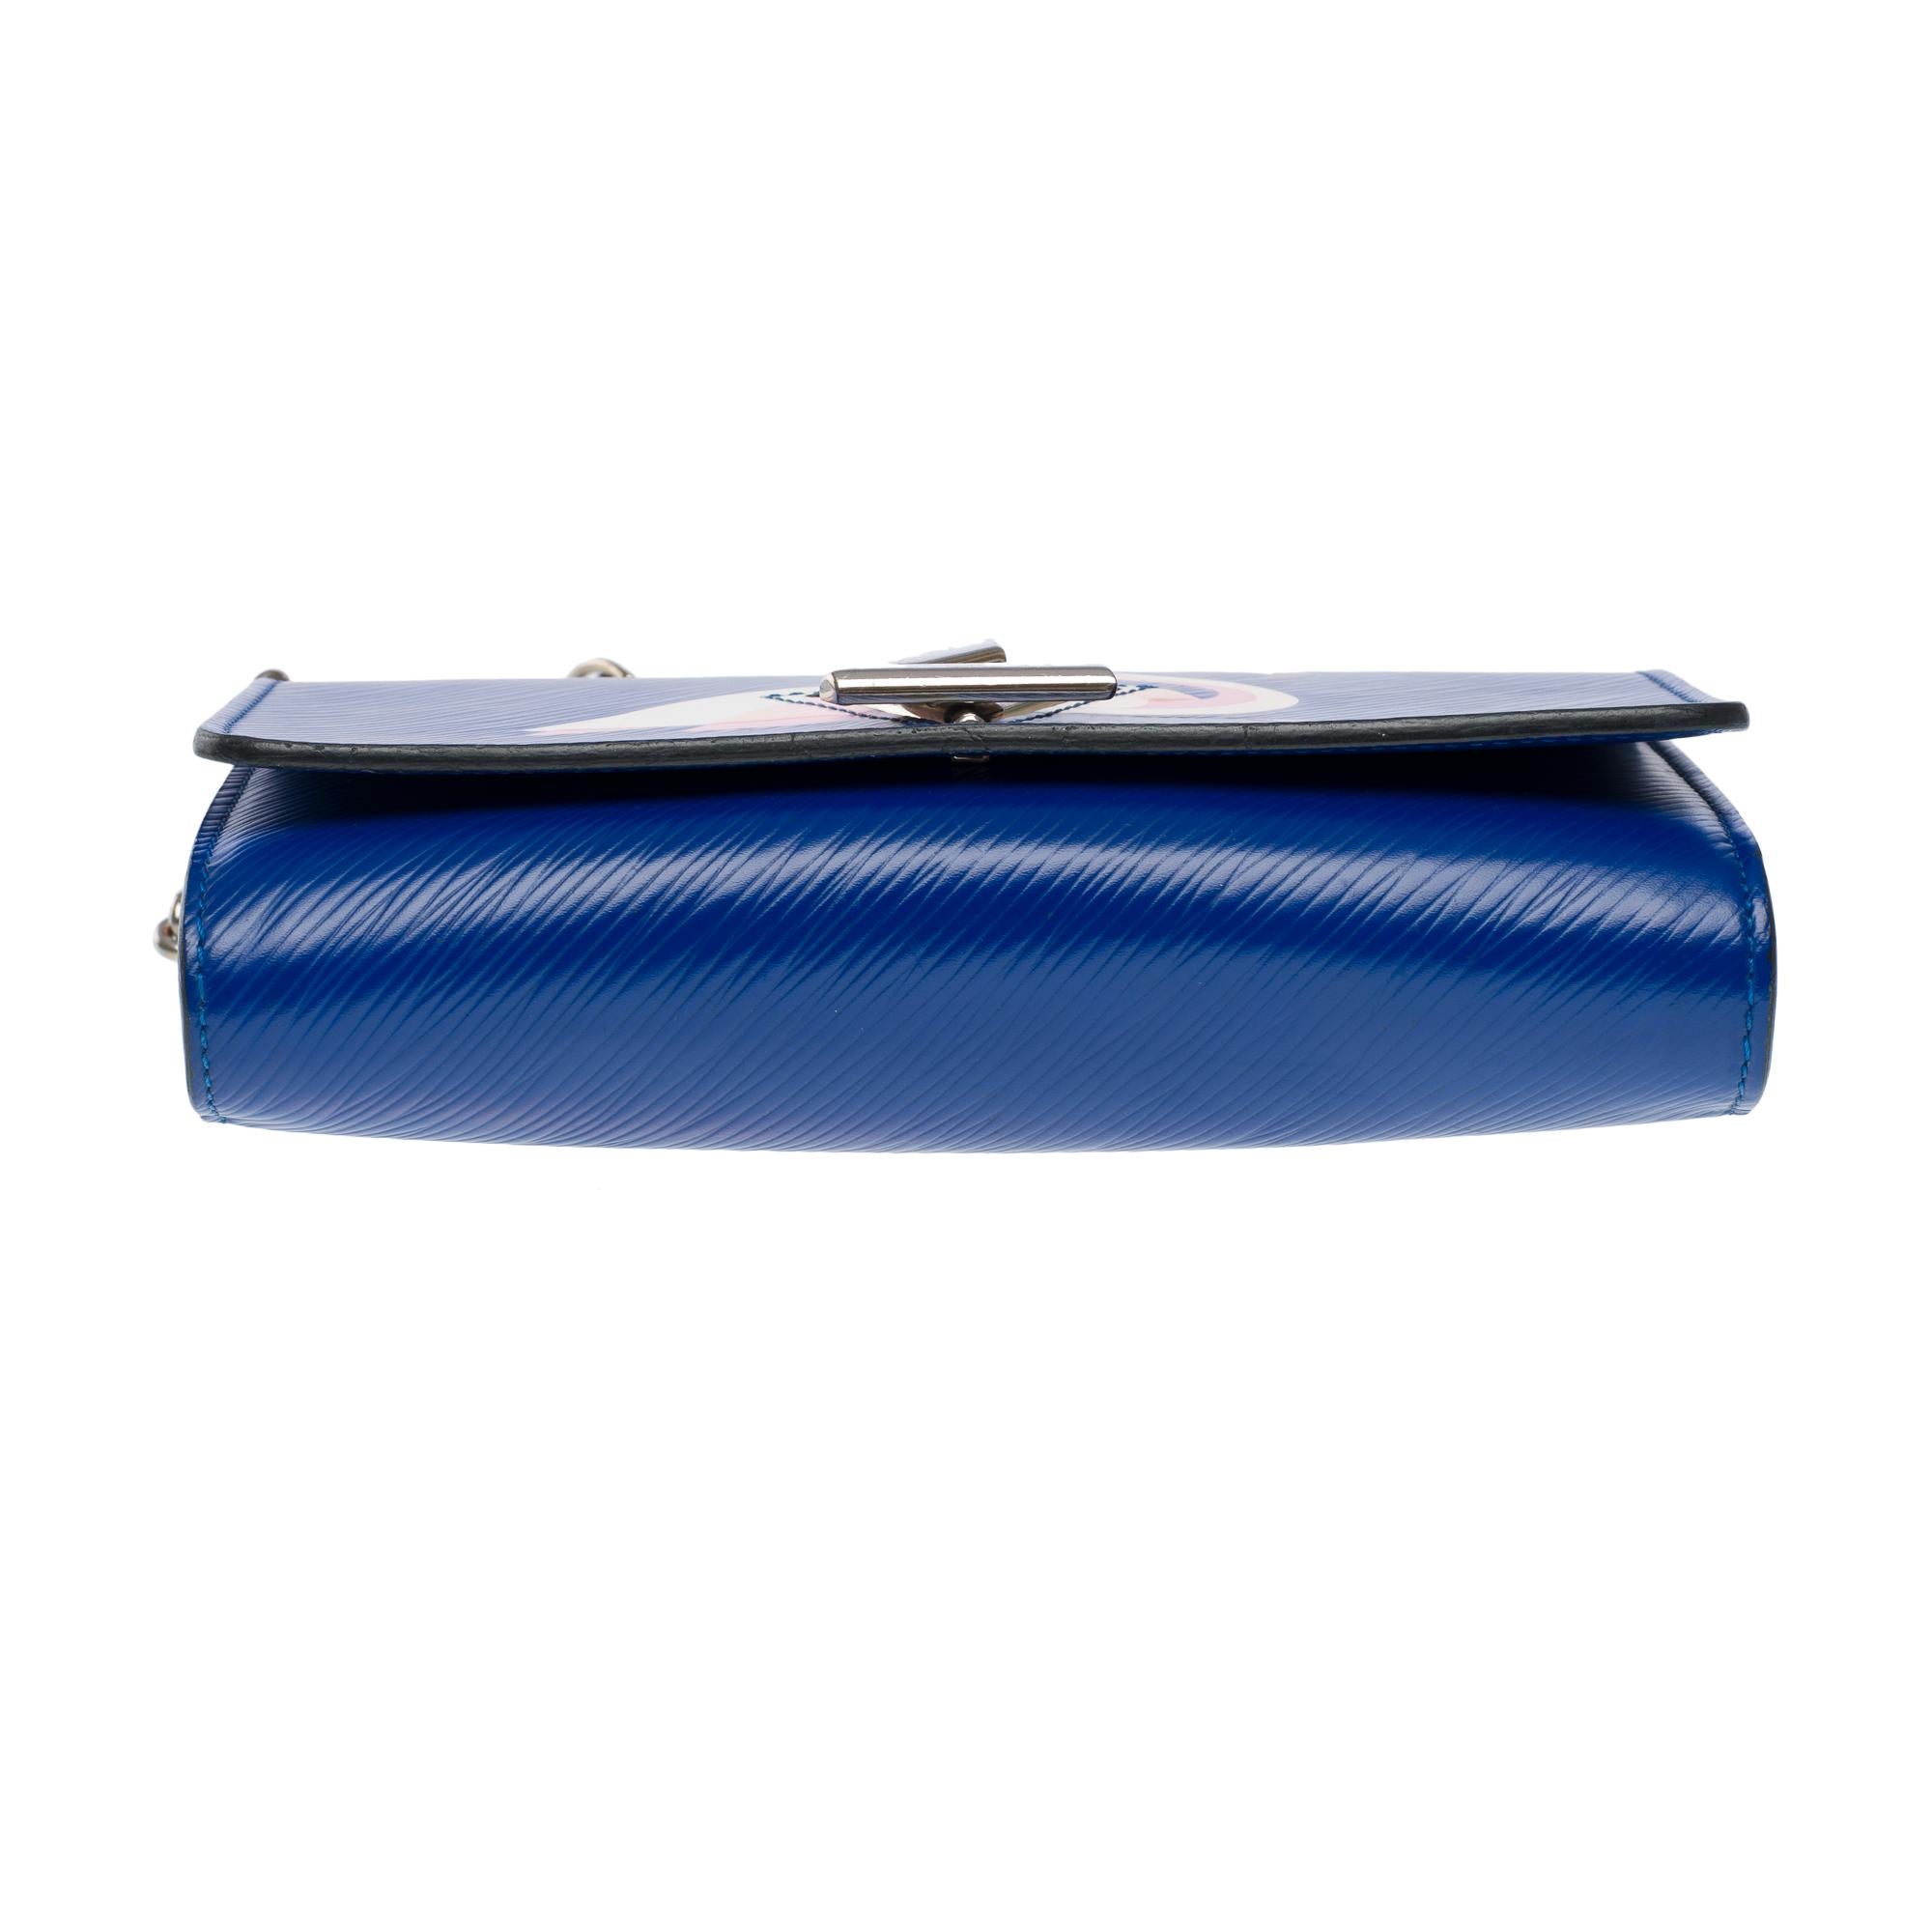 Flamingo Louis Vuitton Twist shoulder bag in blue epi leather, SHW 6